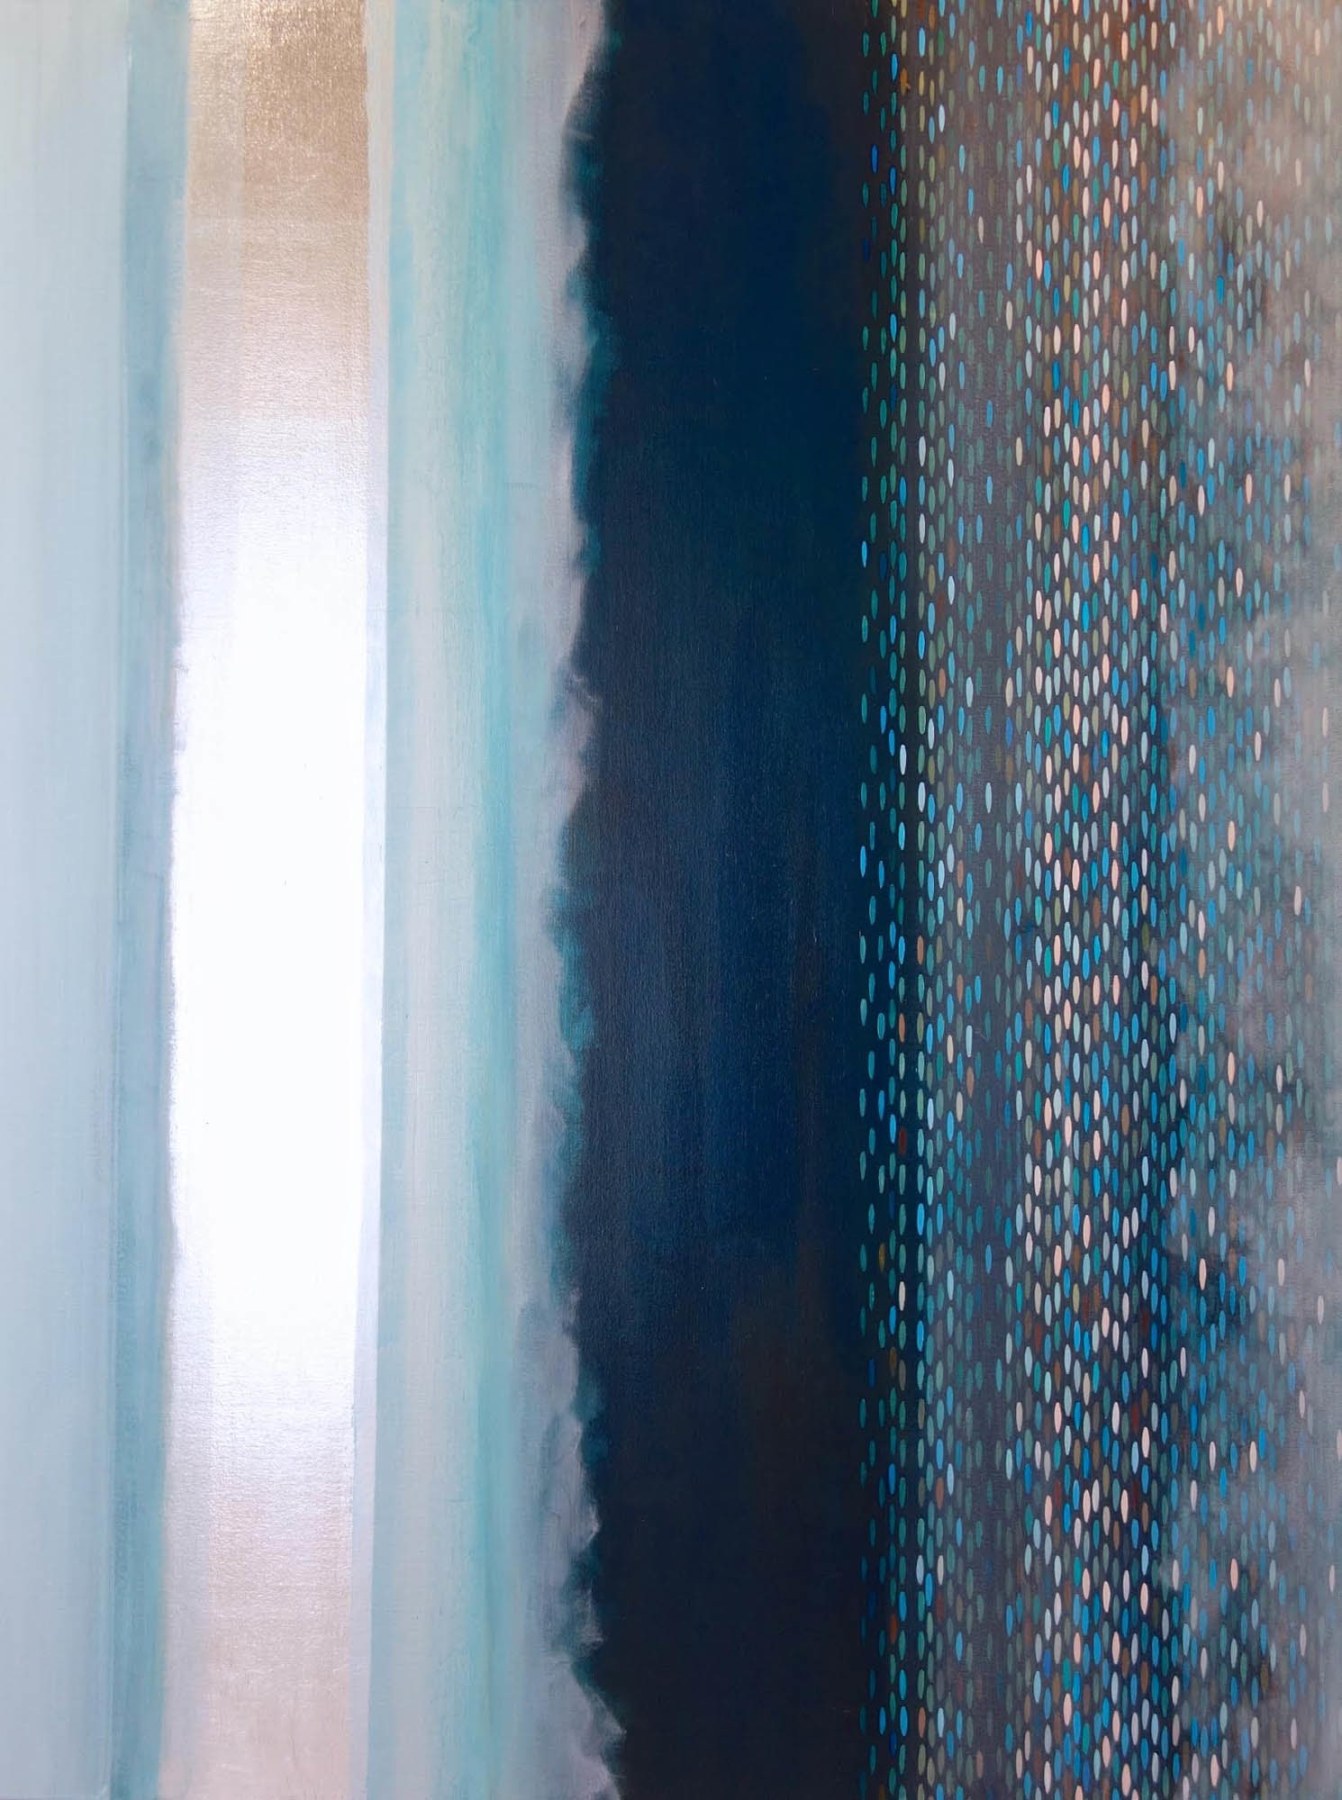 Julika Lackner, Spectral Phase VI, 2013